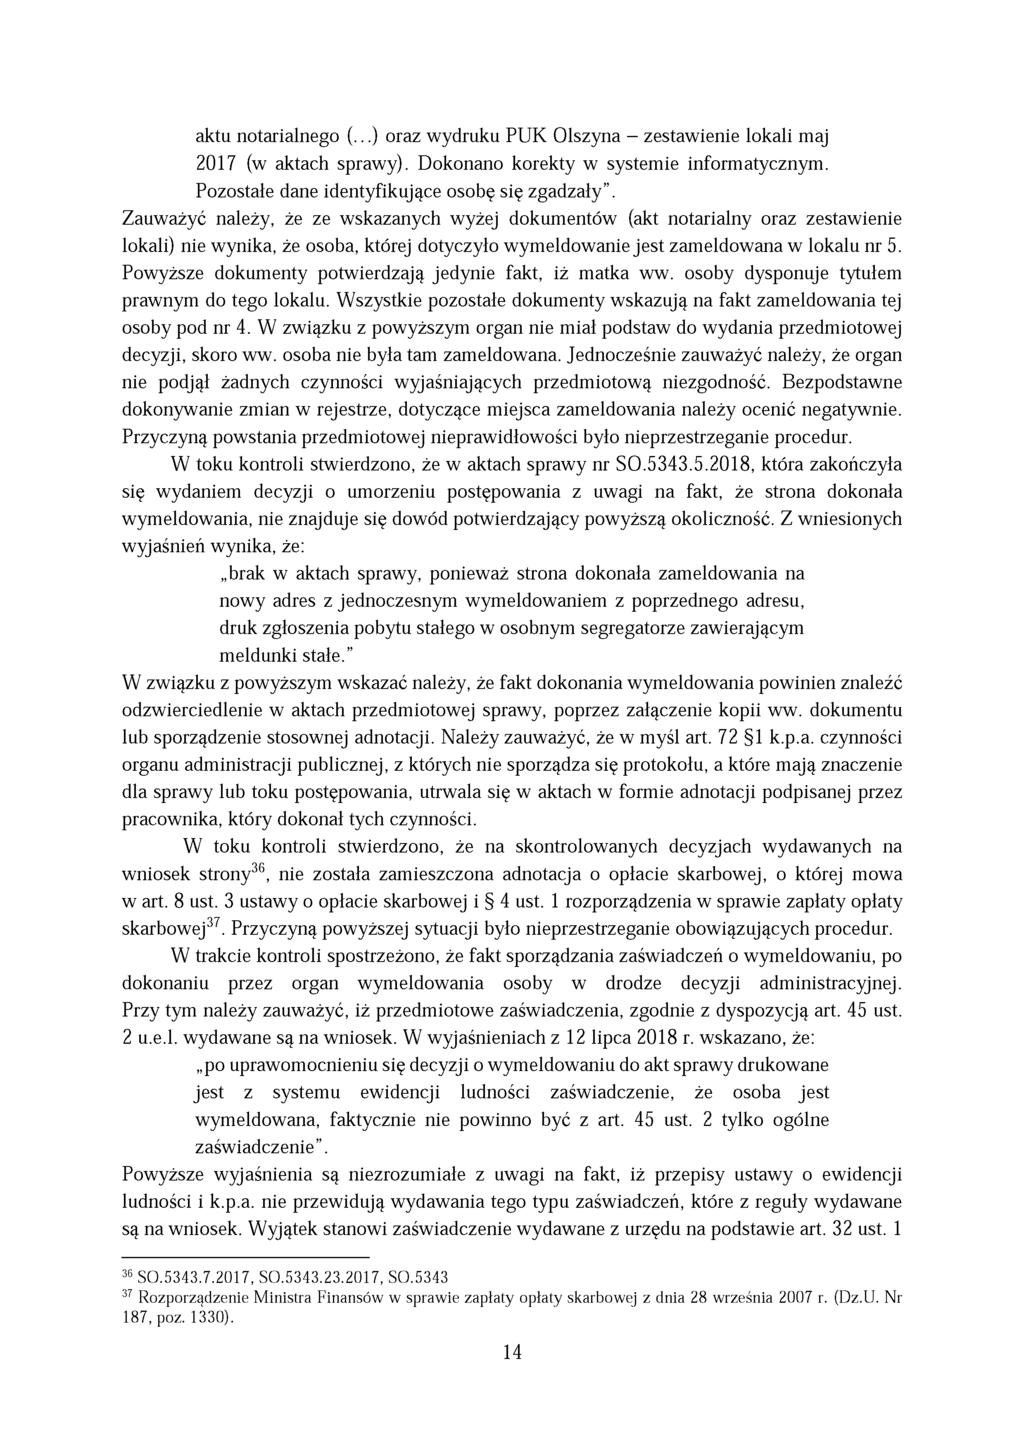 aktu notarialnego (...) oraz wydruku PUK Olszyna - zestawienie lokali maj 2017 (w aktach sprawy). Dokonano korekty w systemie informatycznym. Pozostałe dane identyfikujące osobę się zgadzały.